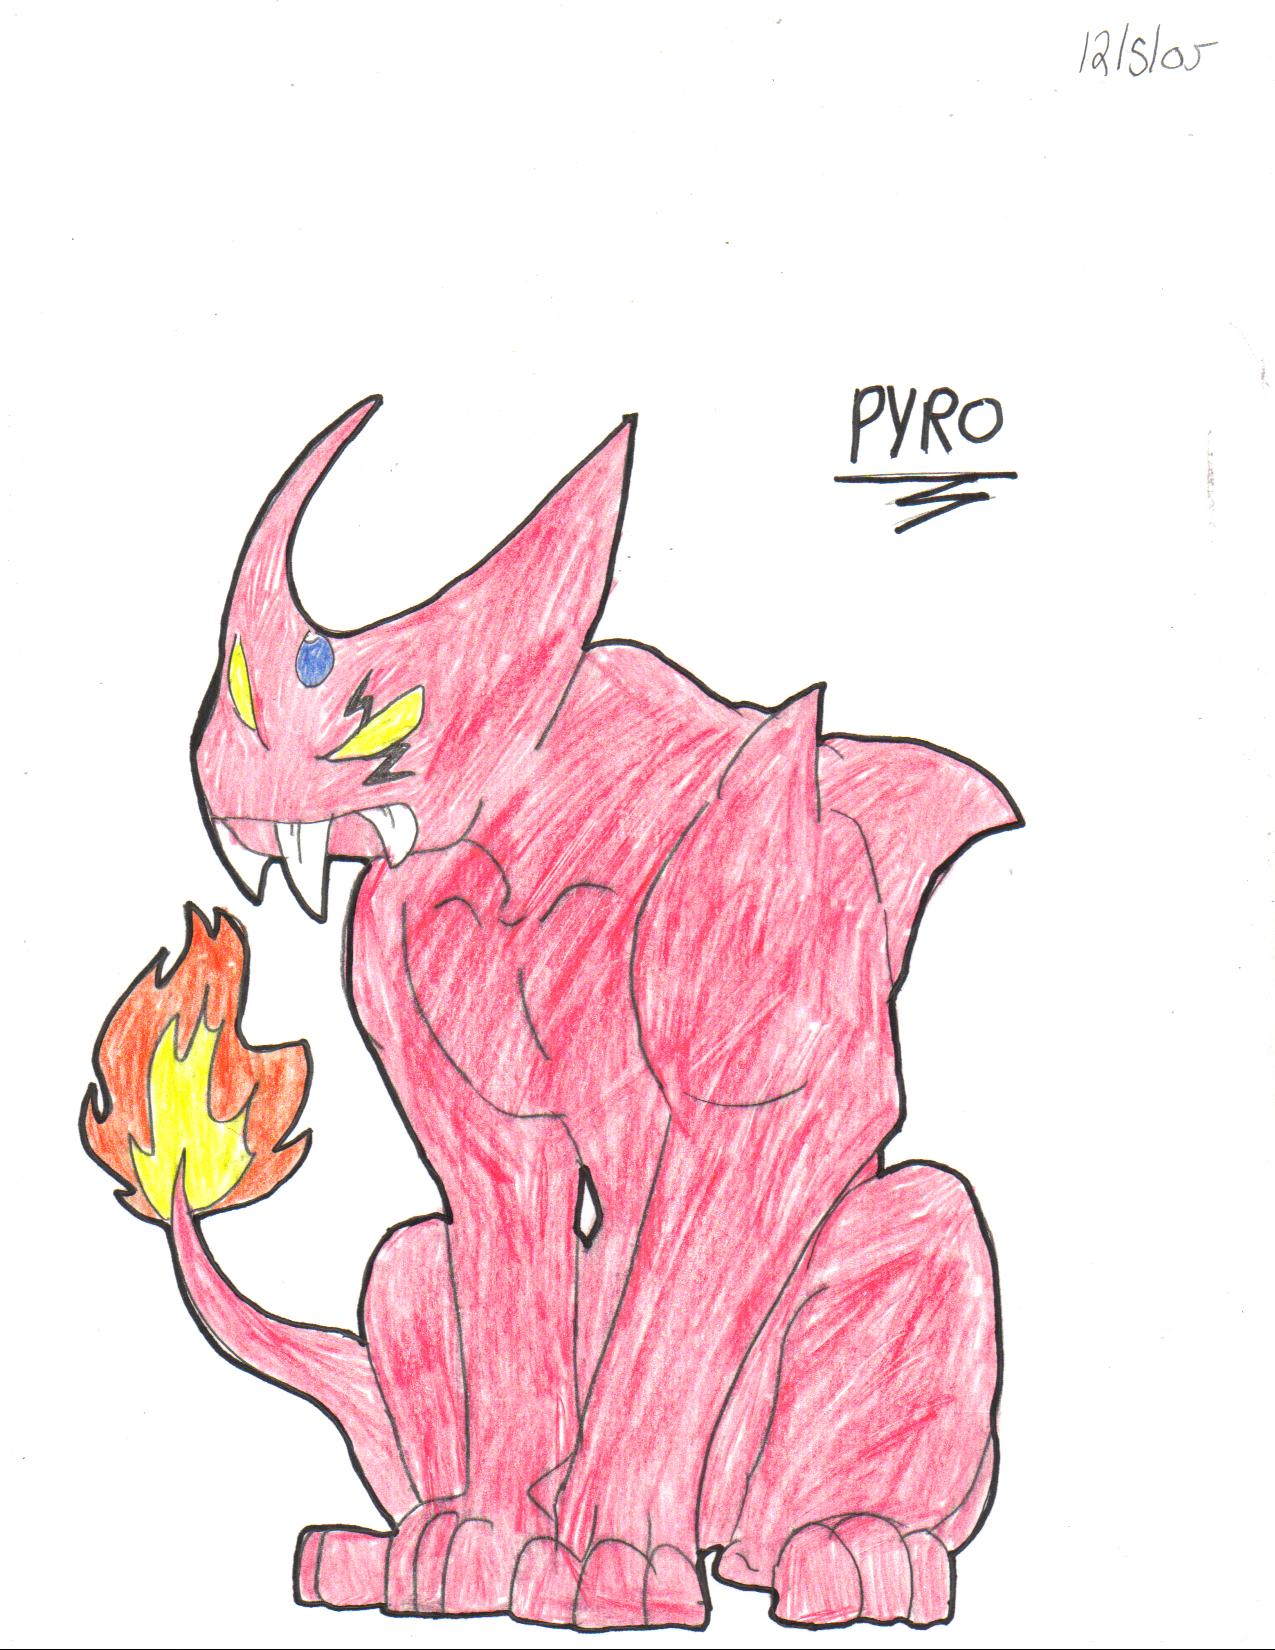 Pyro by crocdragon89